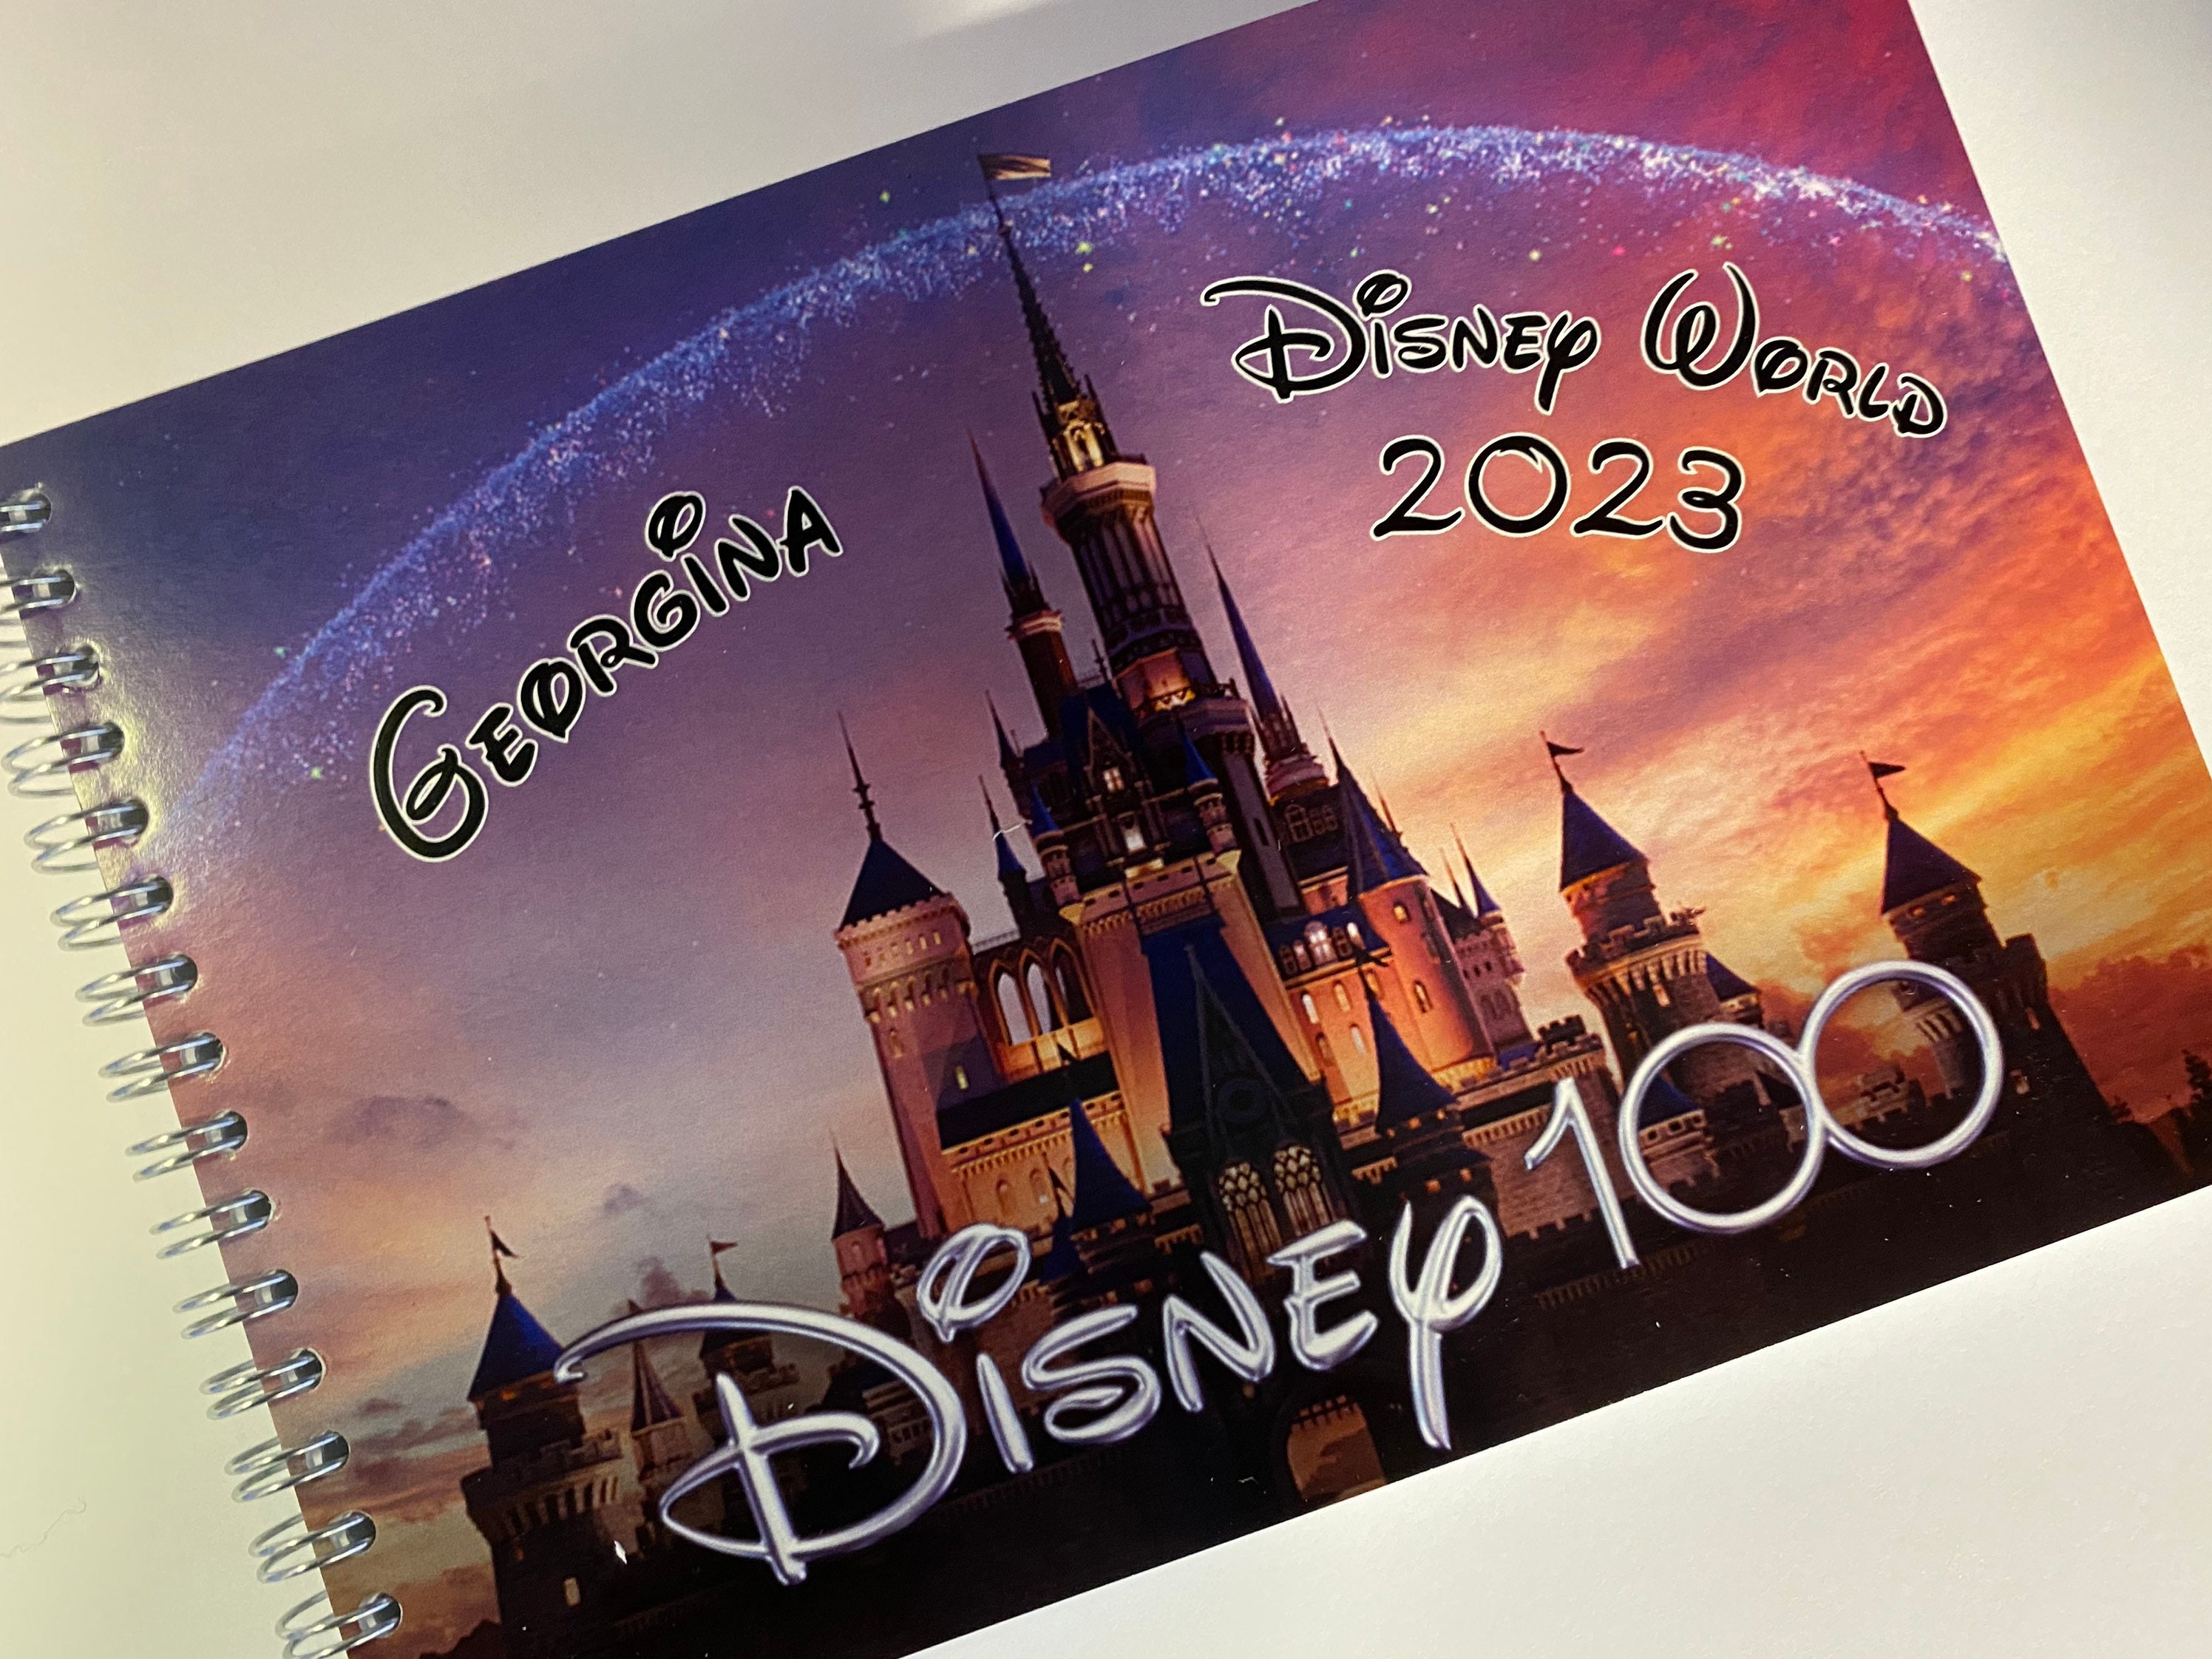 Libro de autógrafos de Disney personalizado del 100 aniversario de Disney